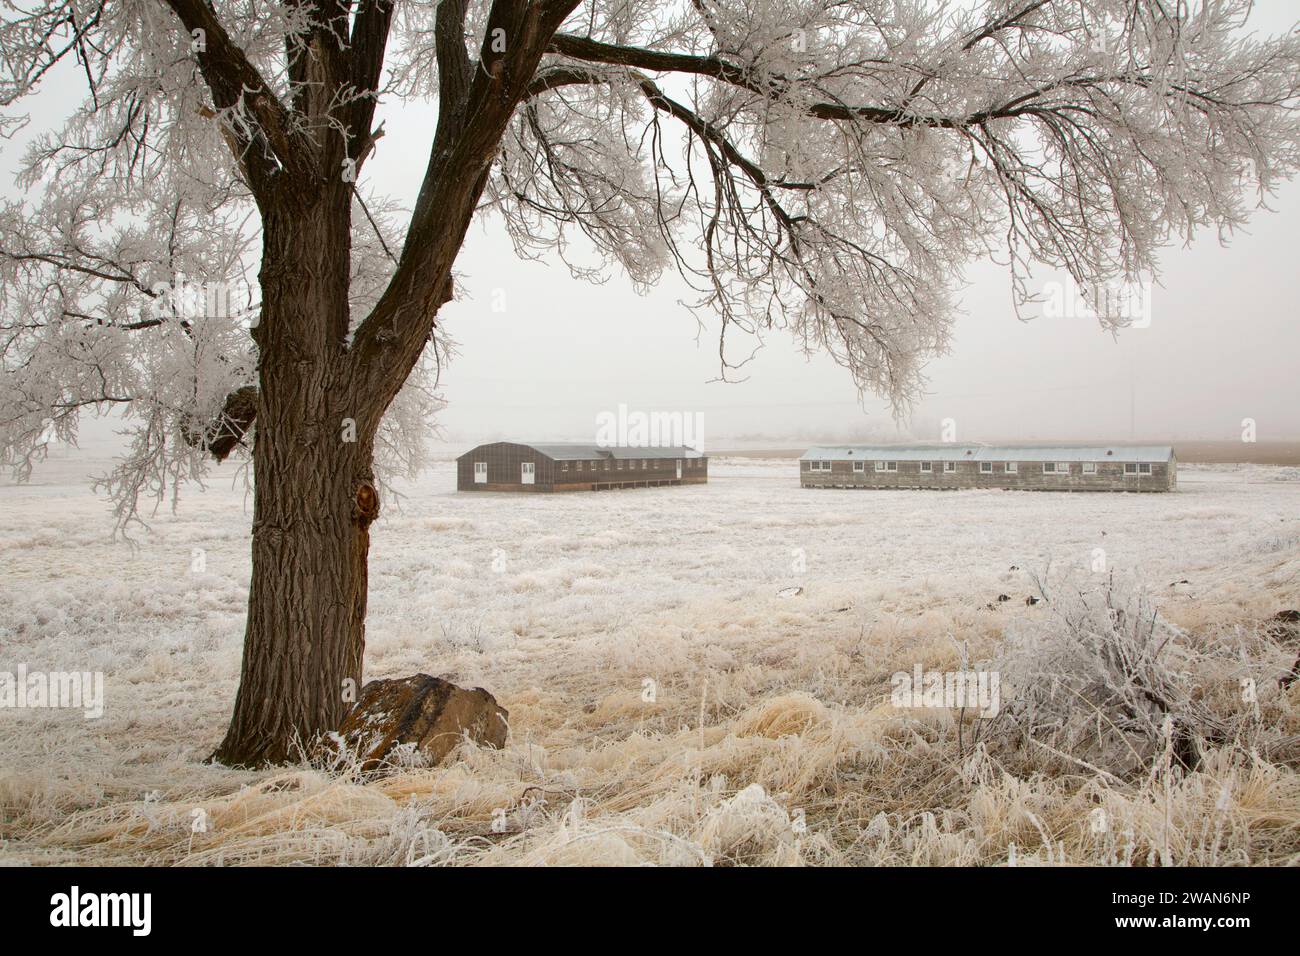 Living Barracks and Mess Hall, Minidoka National Historic Site, Idaho Stock Photo